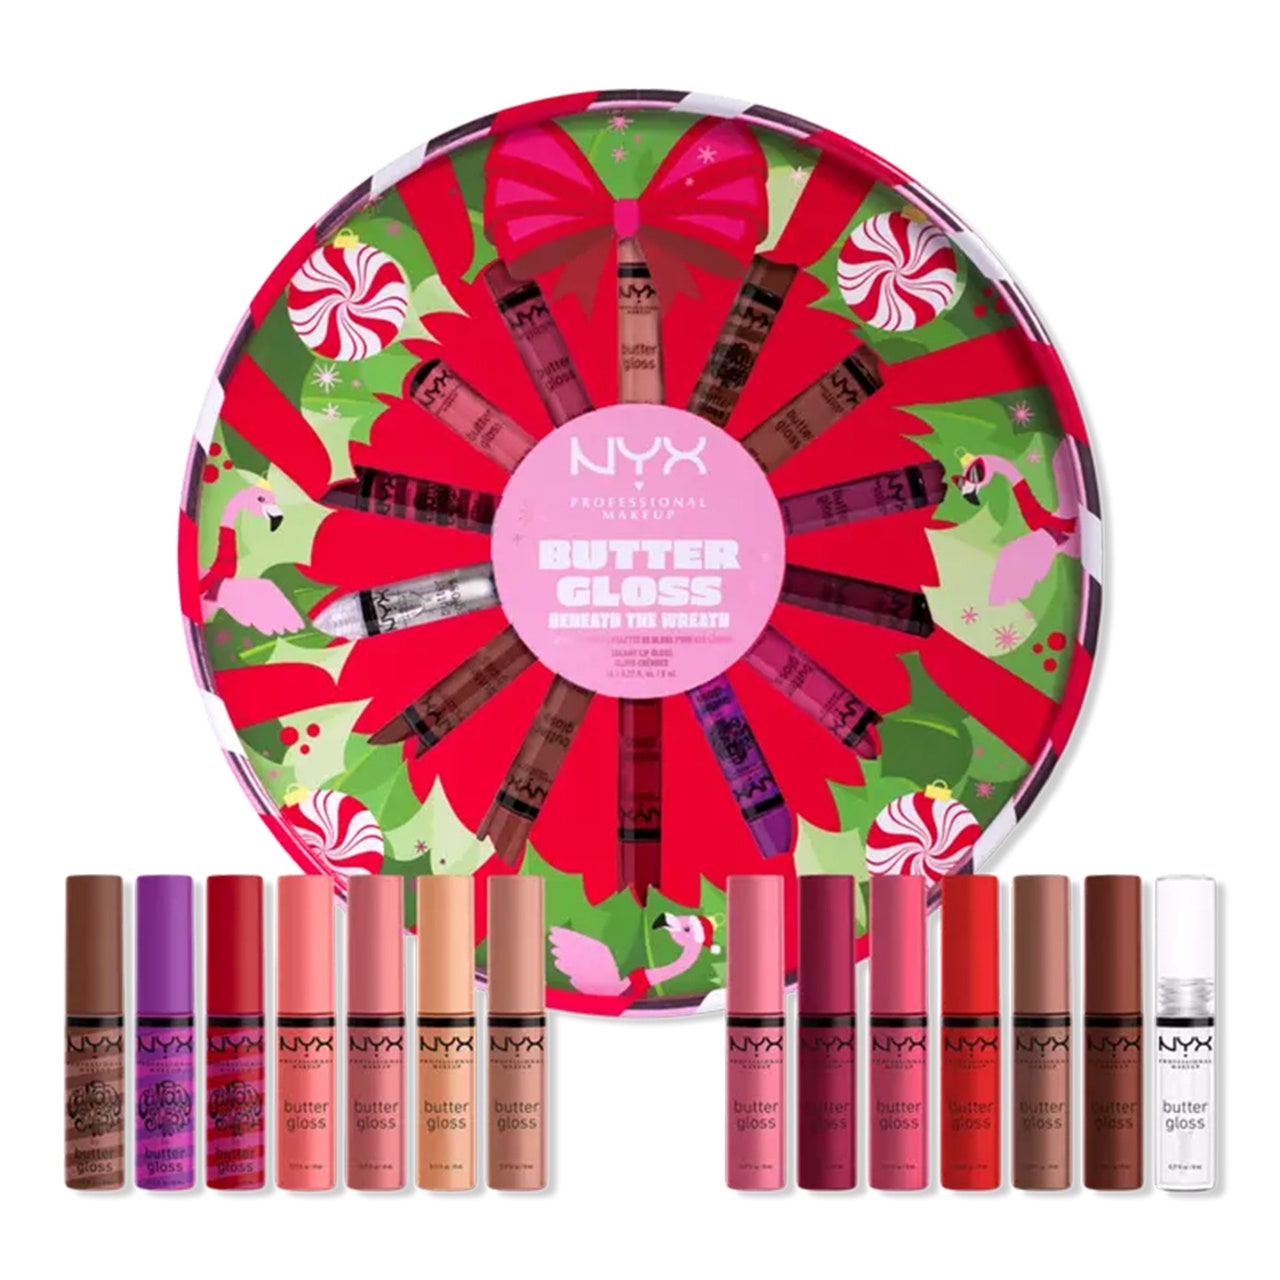 Limited Edition Butter Gloss Beneath The Wreath Lip Gloss Weihnachtsgeschenkset, rote Kreisbox und zwölf Lipgloss auf weißem Hintergrund